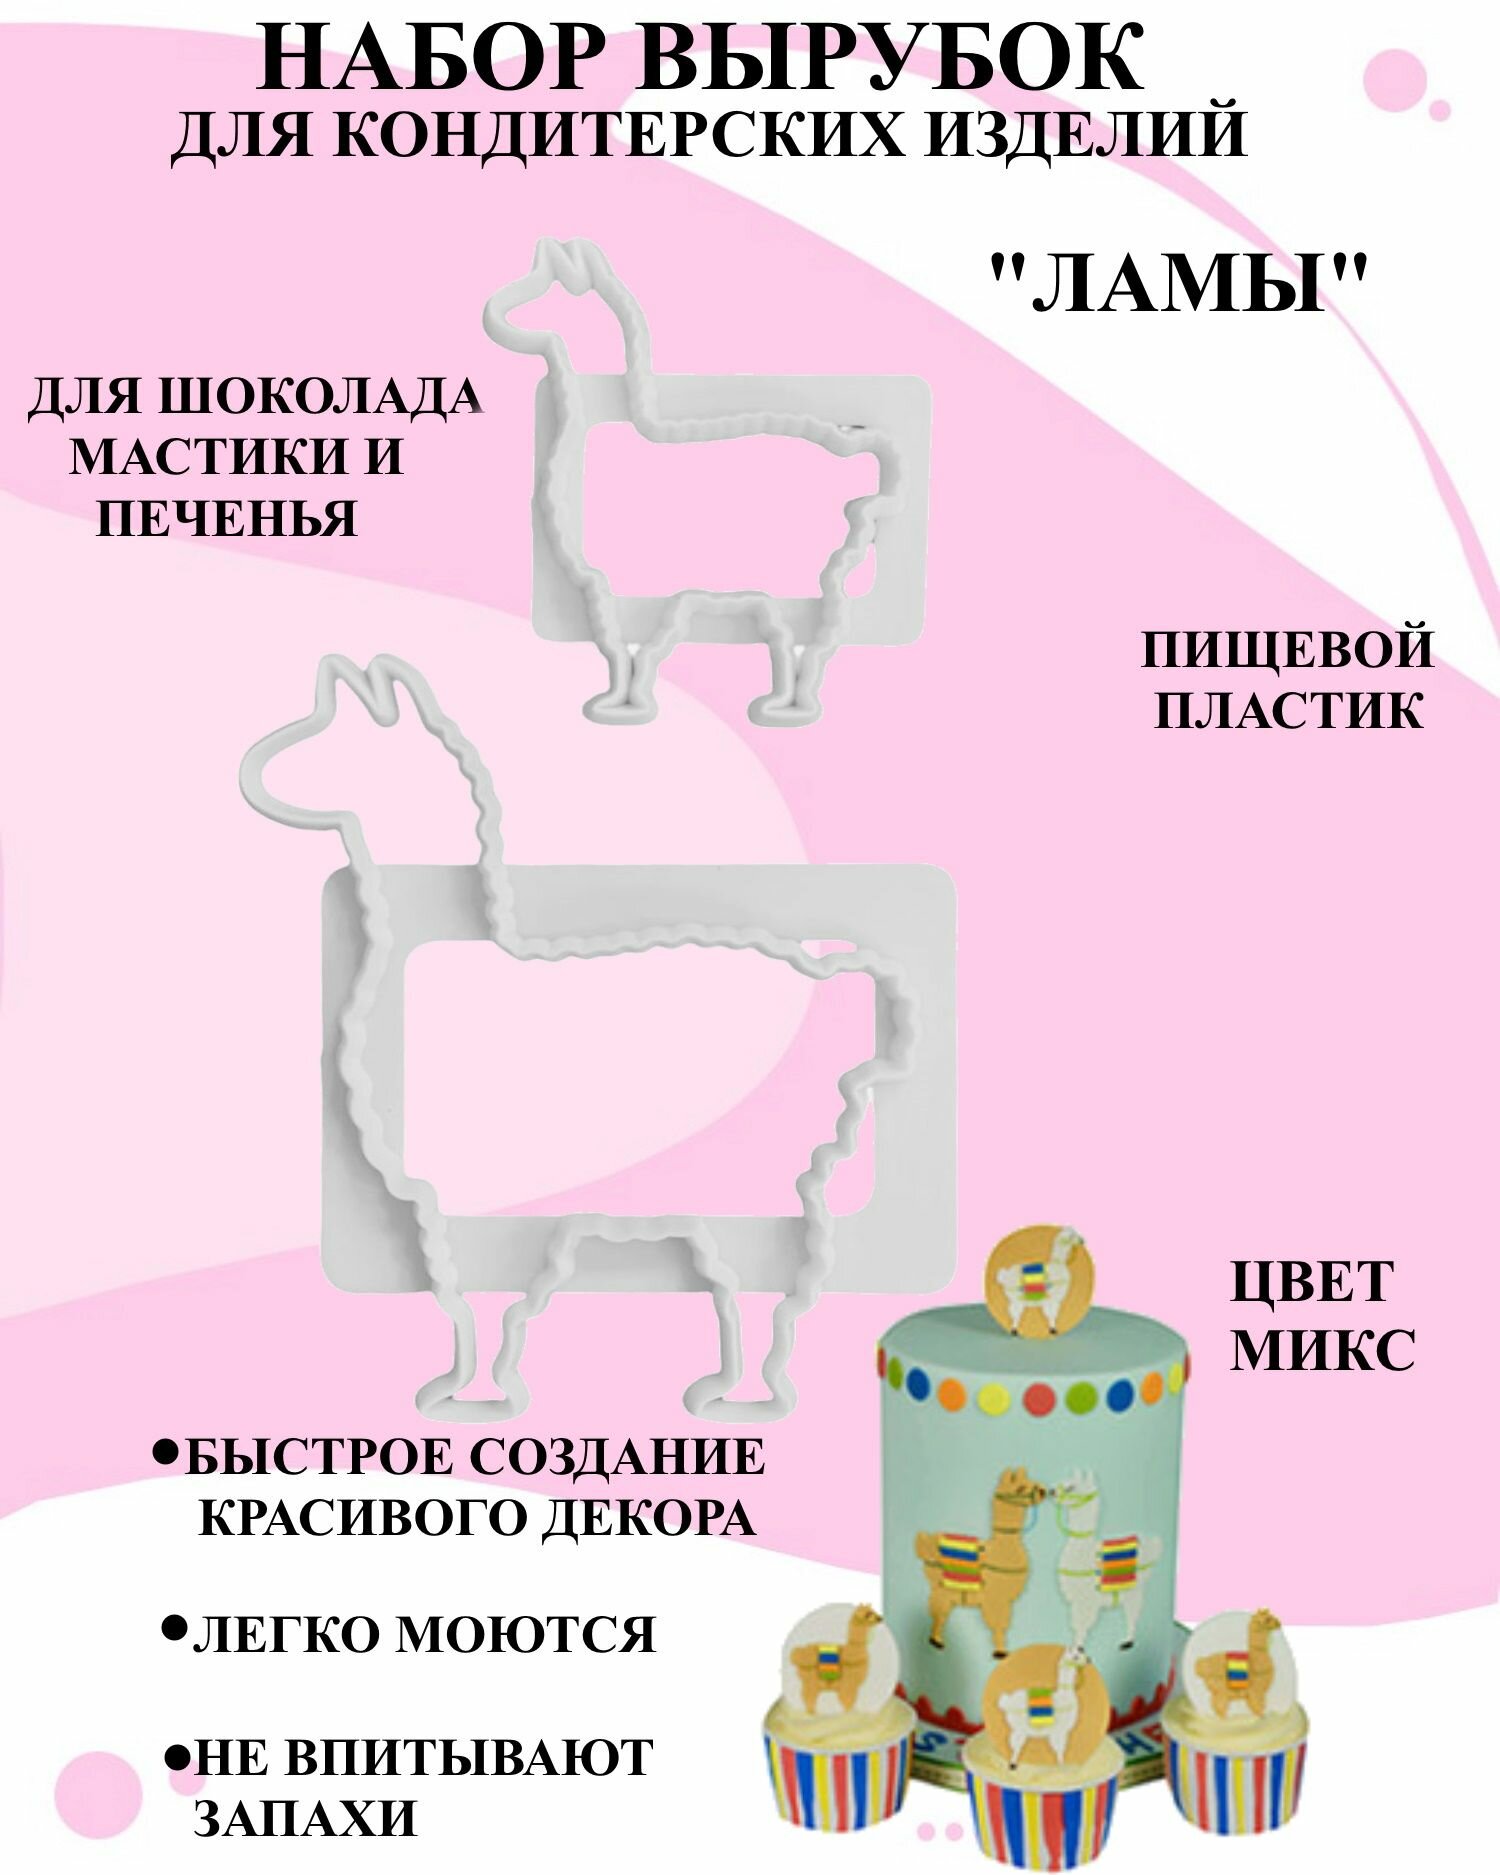 Набор вырубок для изделий из мастики 2 ламы, набор кондитерских выемок в виде лам, декор из выемок для мастики животные